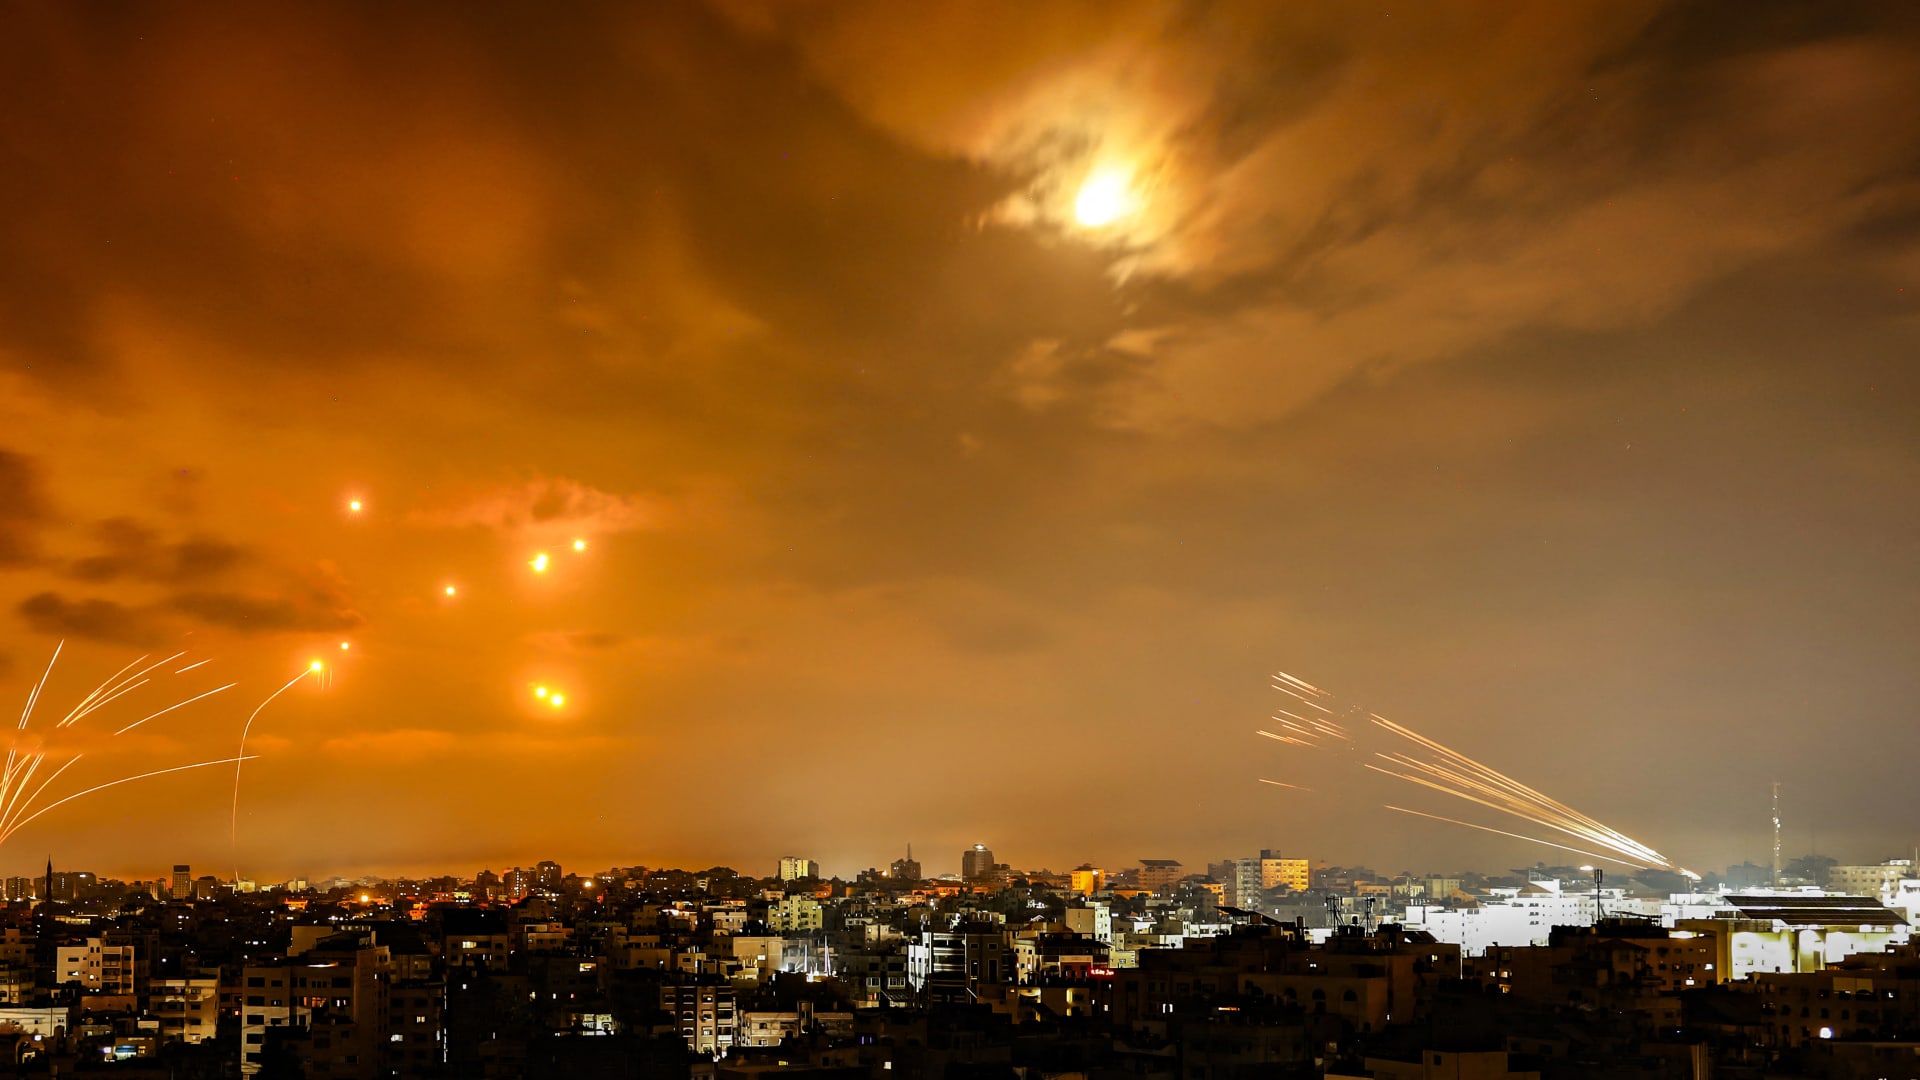 إسرائيل تحشد قواتها بشكل كثيف على حدود غزة.. هل تستعد لتوغل بري؟